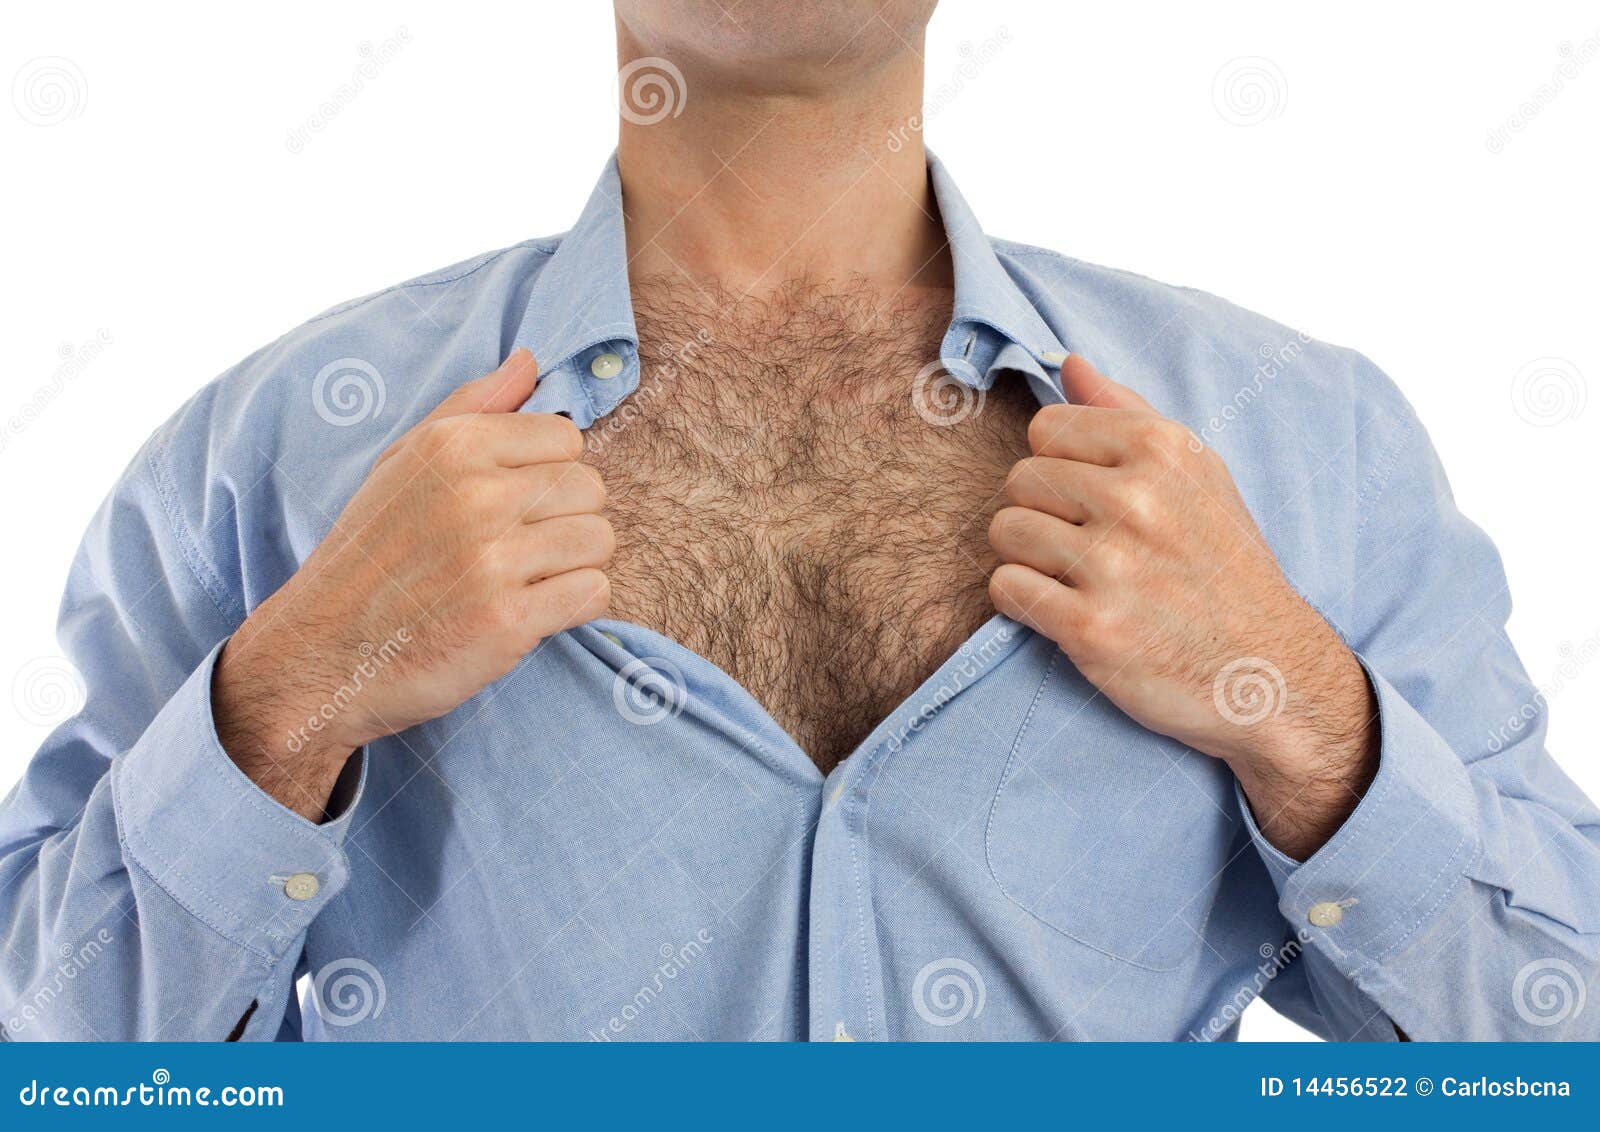 男人胸部乳头有痣代表什么含义寓意？_华易算命网